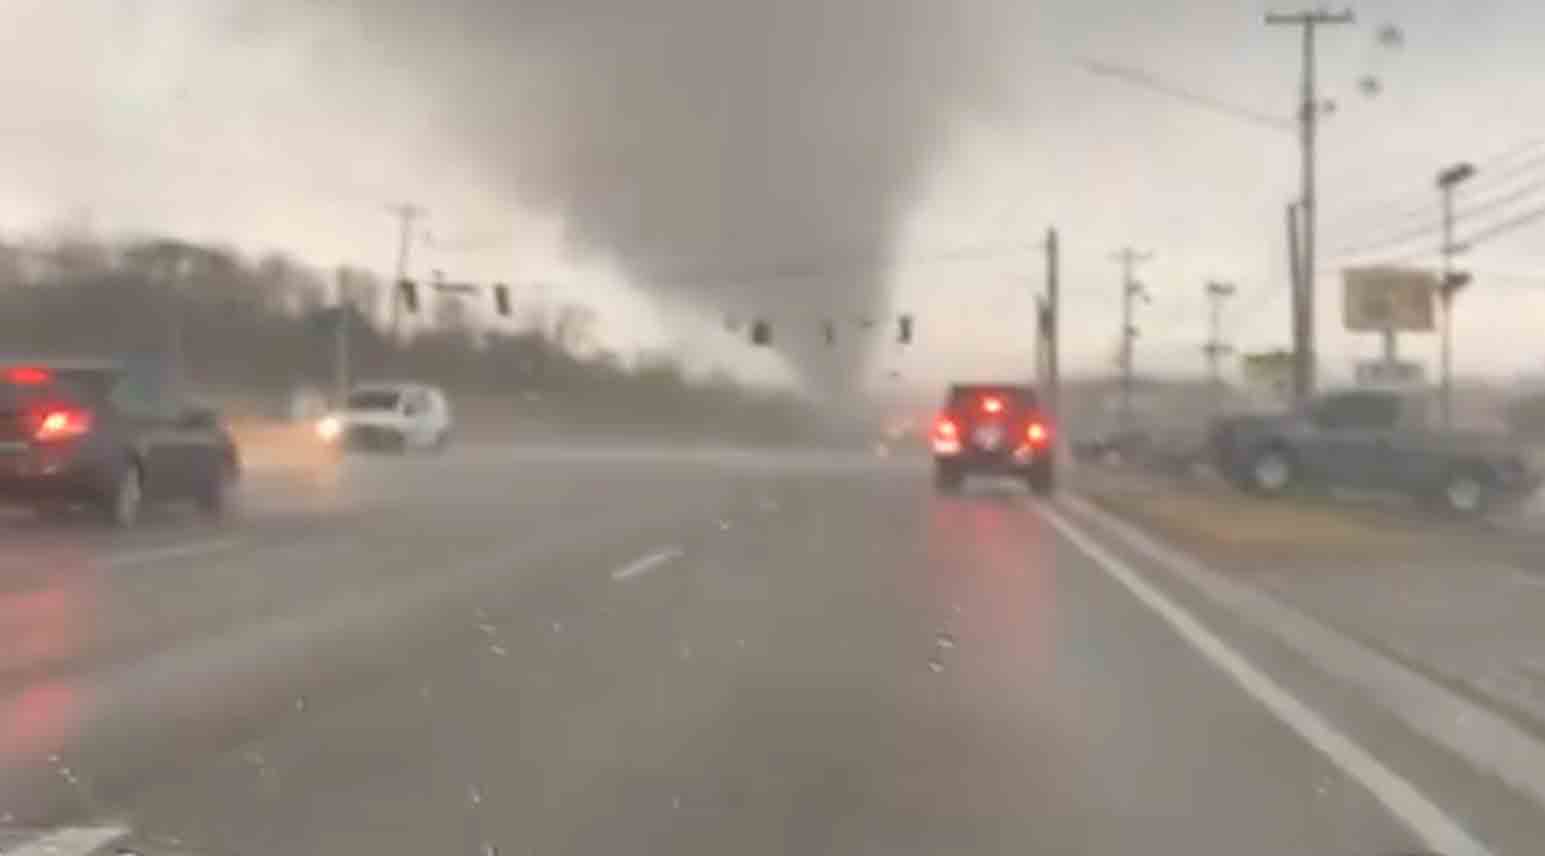 Vidéo montre une tornade frappant des villes dans le Tennessee, faisant au moins 6 victimes mortelles. Photo et vidéos : Reproduction de Twitter